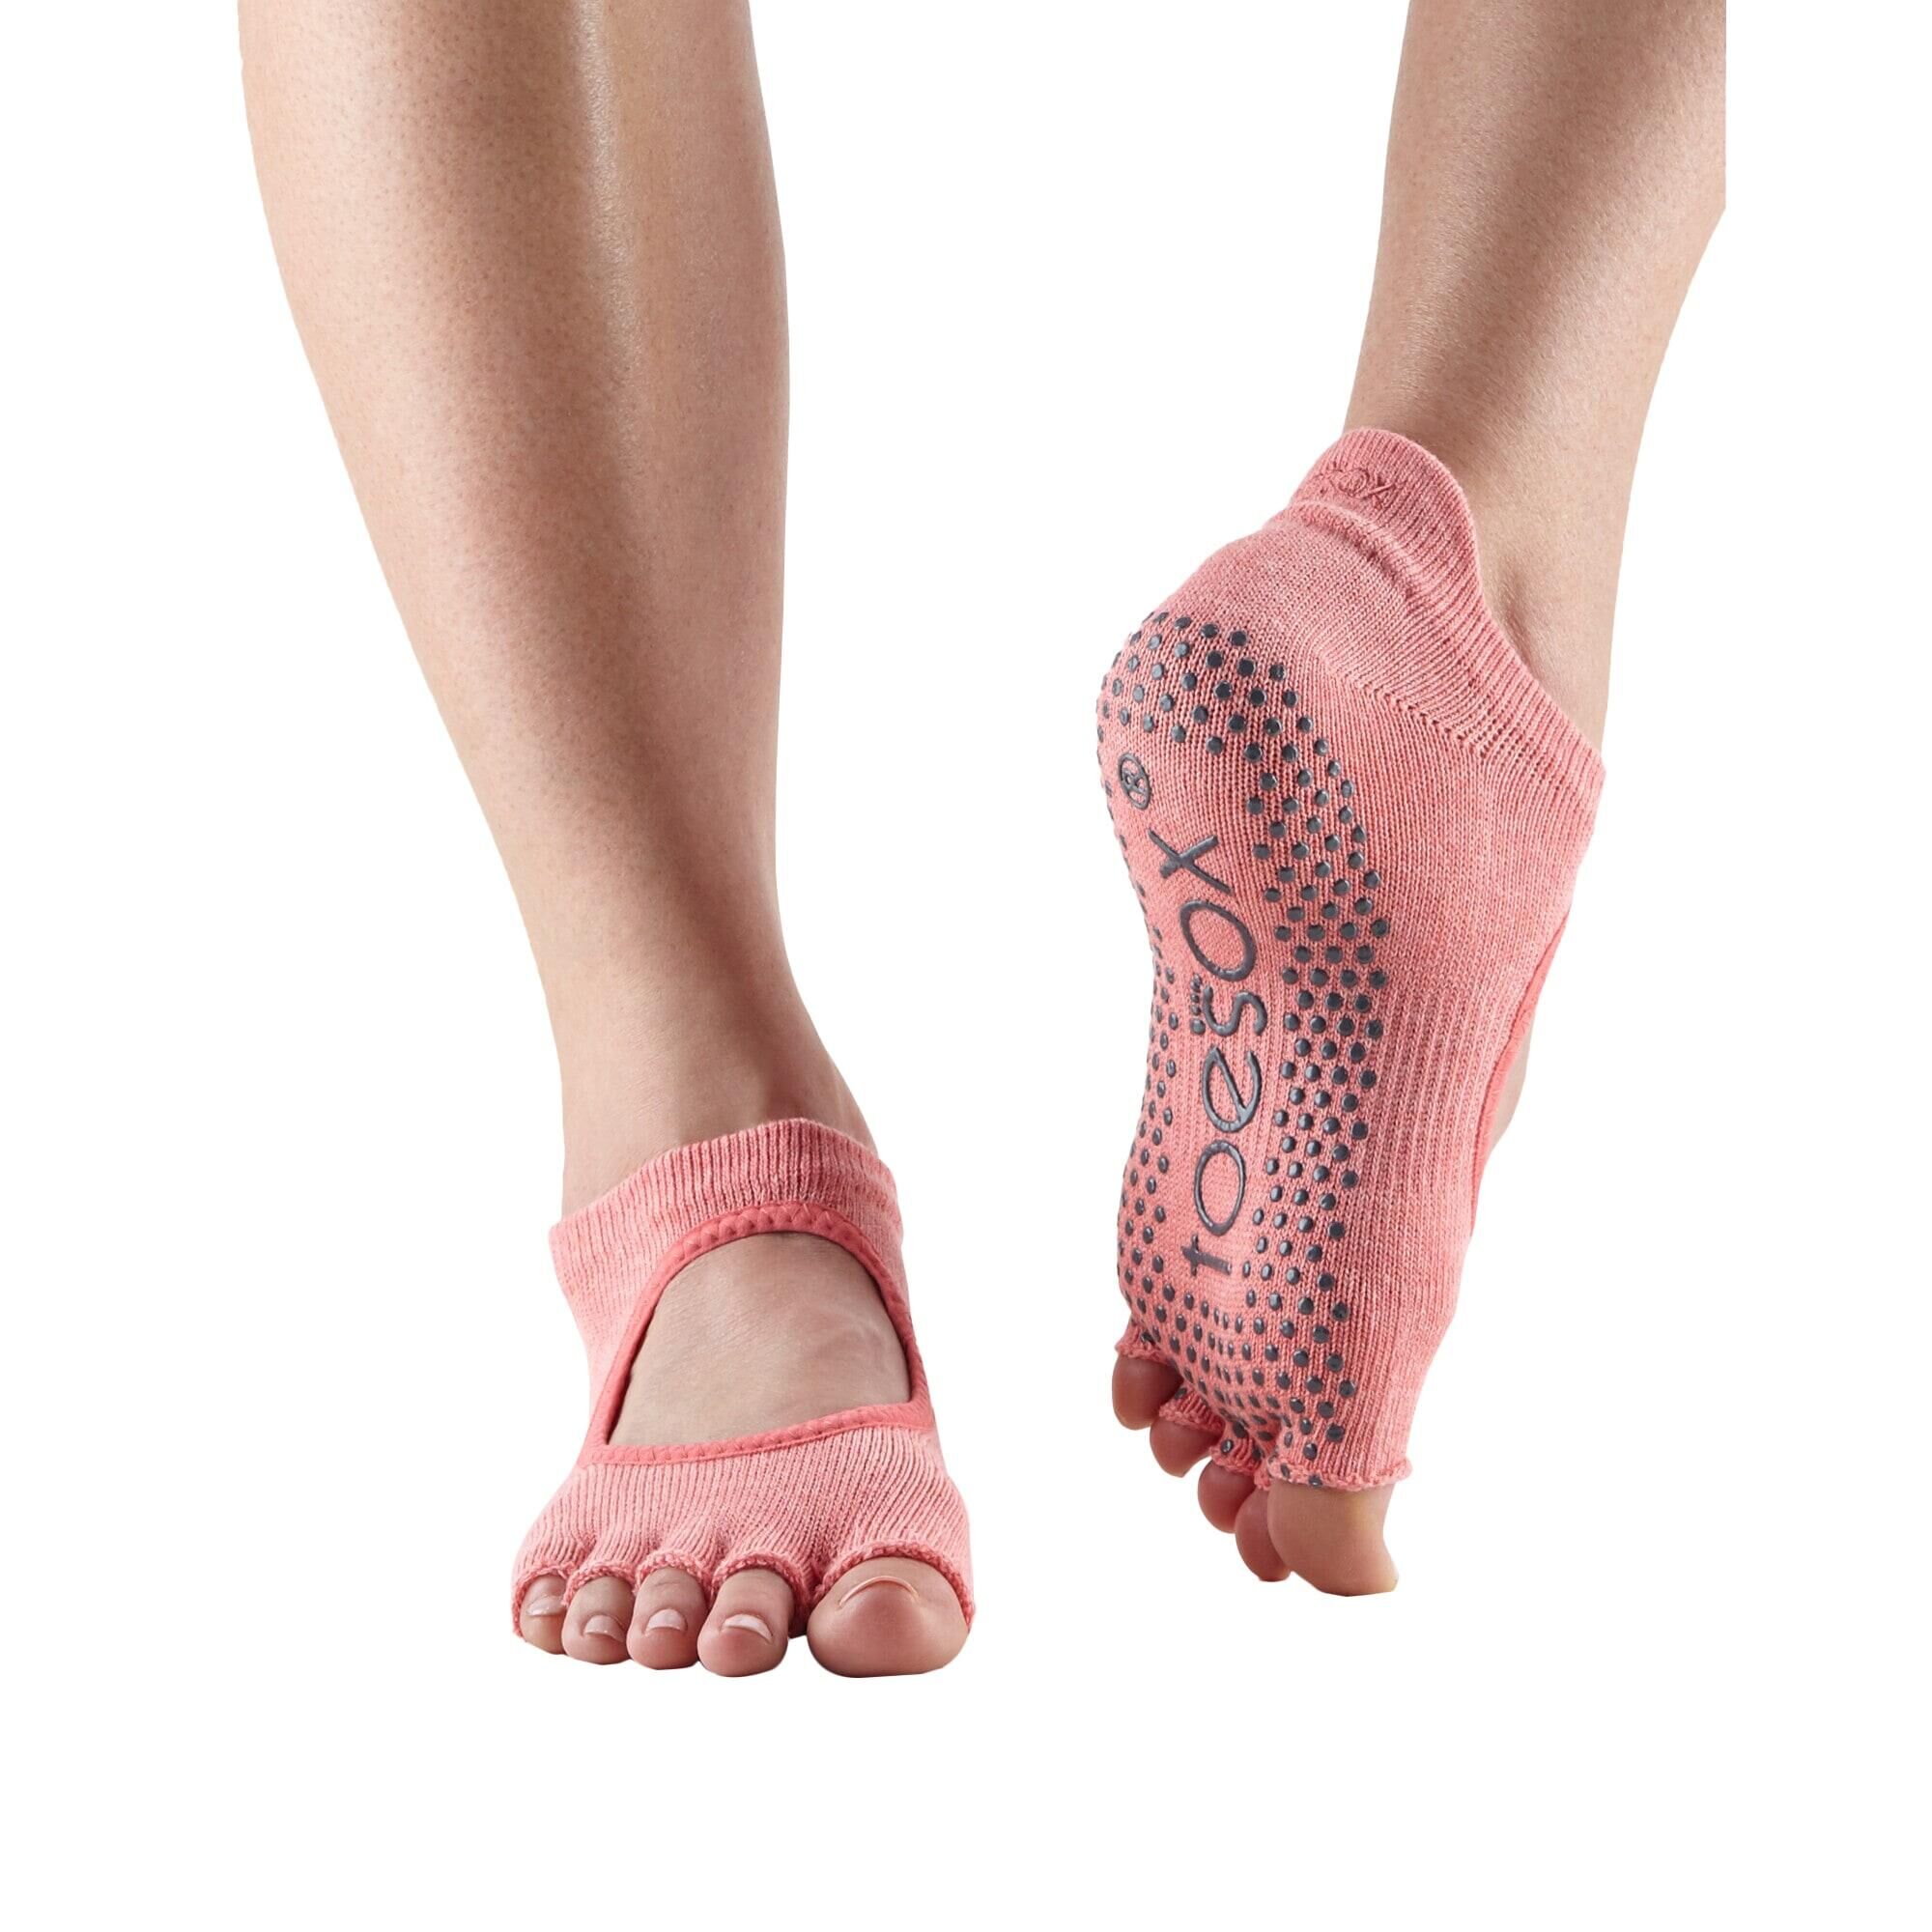 FITNESS-MAD Womens/Ladies Bellarina Gripped Half Toe Socks (Melon)